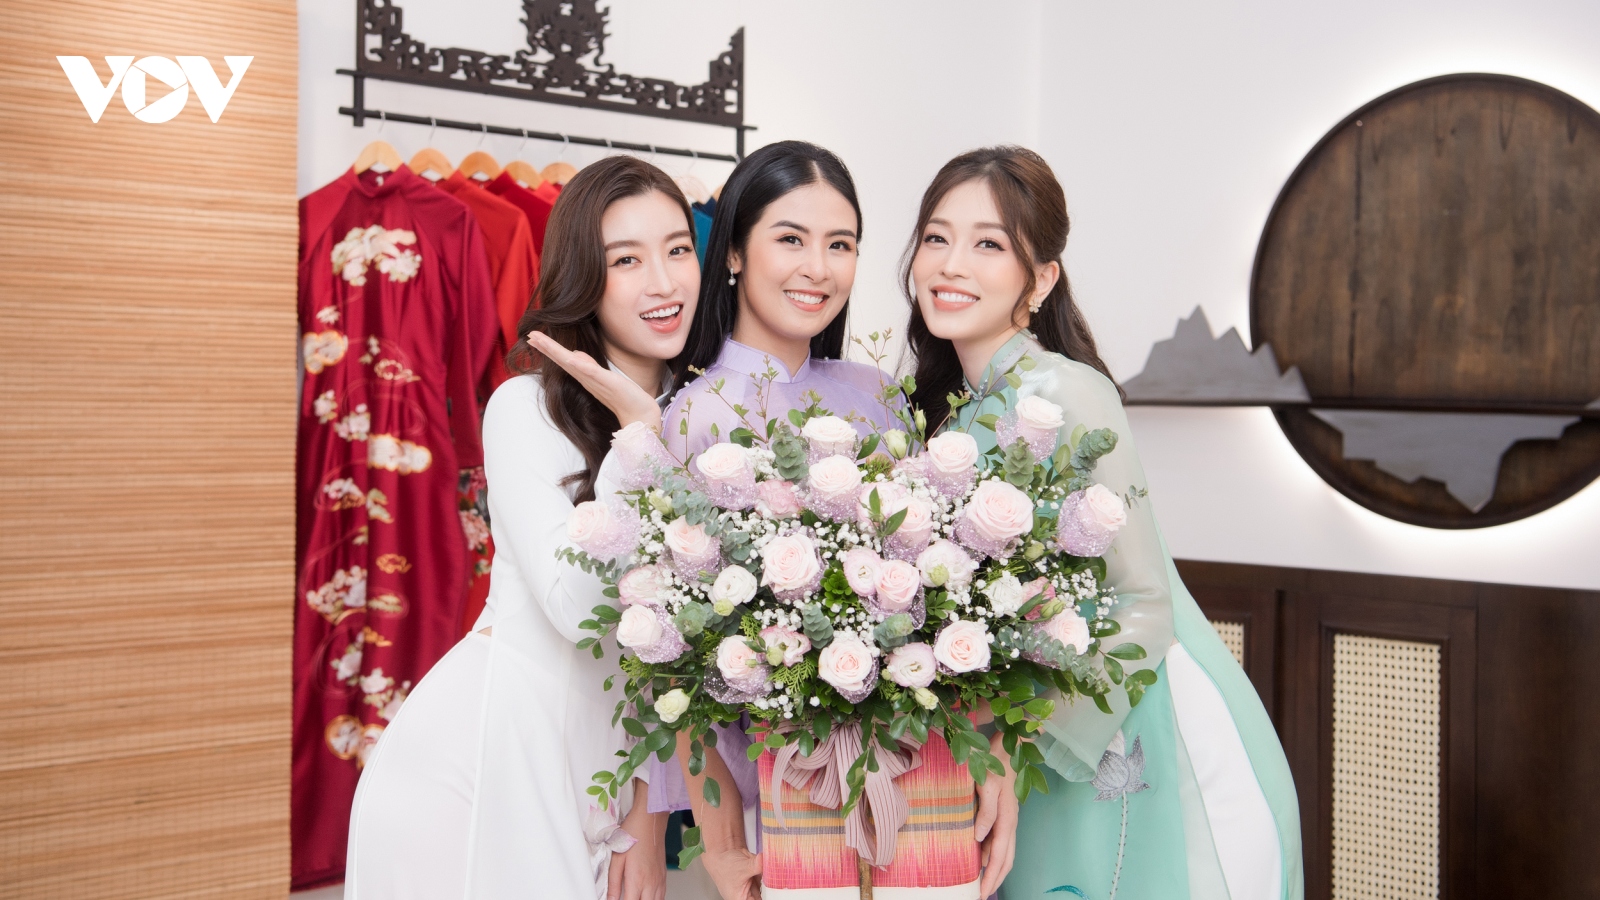 Đỗ Mỹ Linh, Phương Nga chúc mừng Hoa hậu Ngọc Hân khai trương cửa hàng áo dài mới